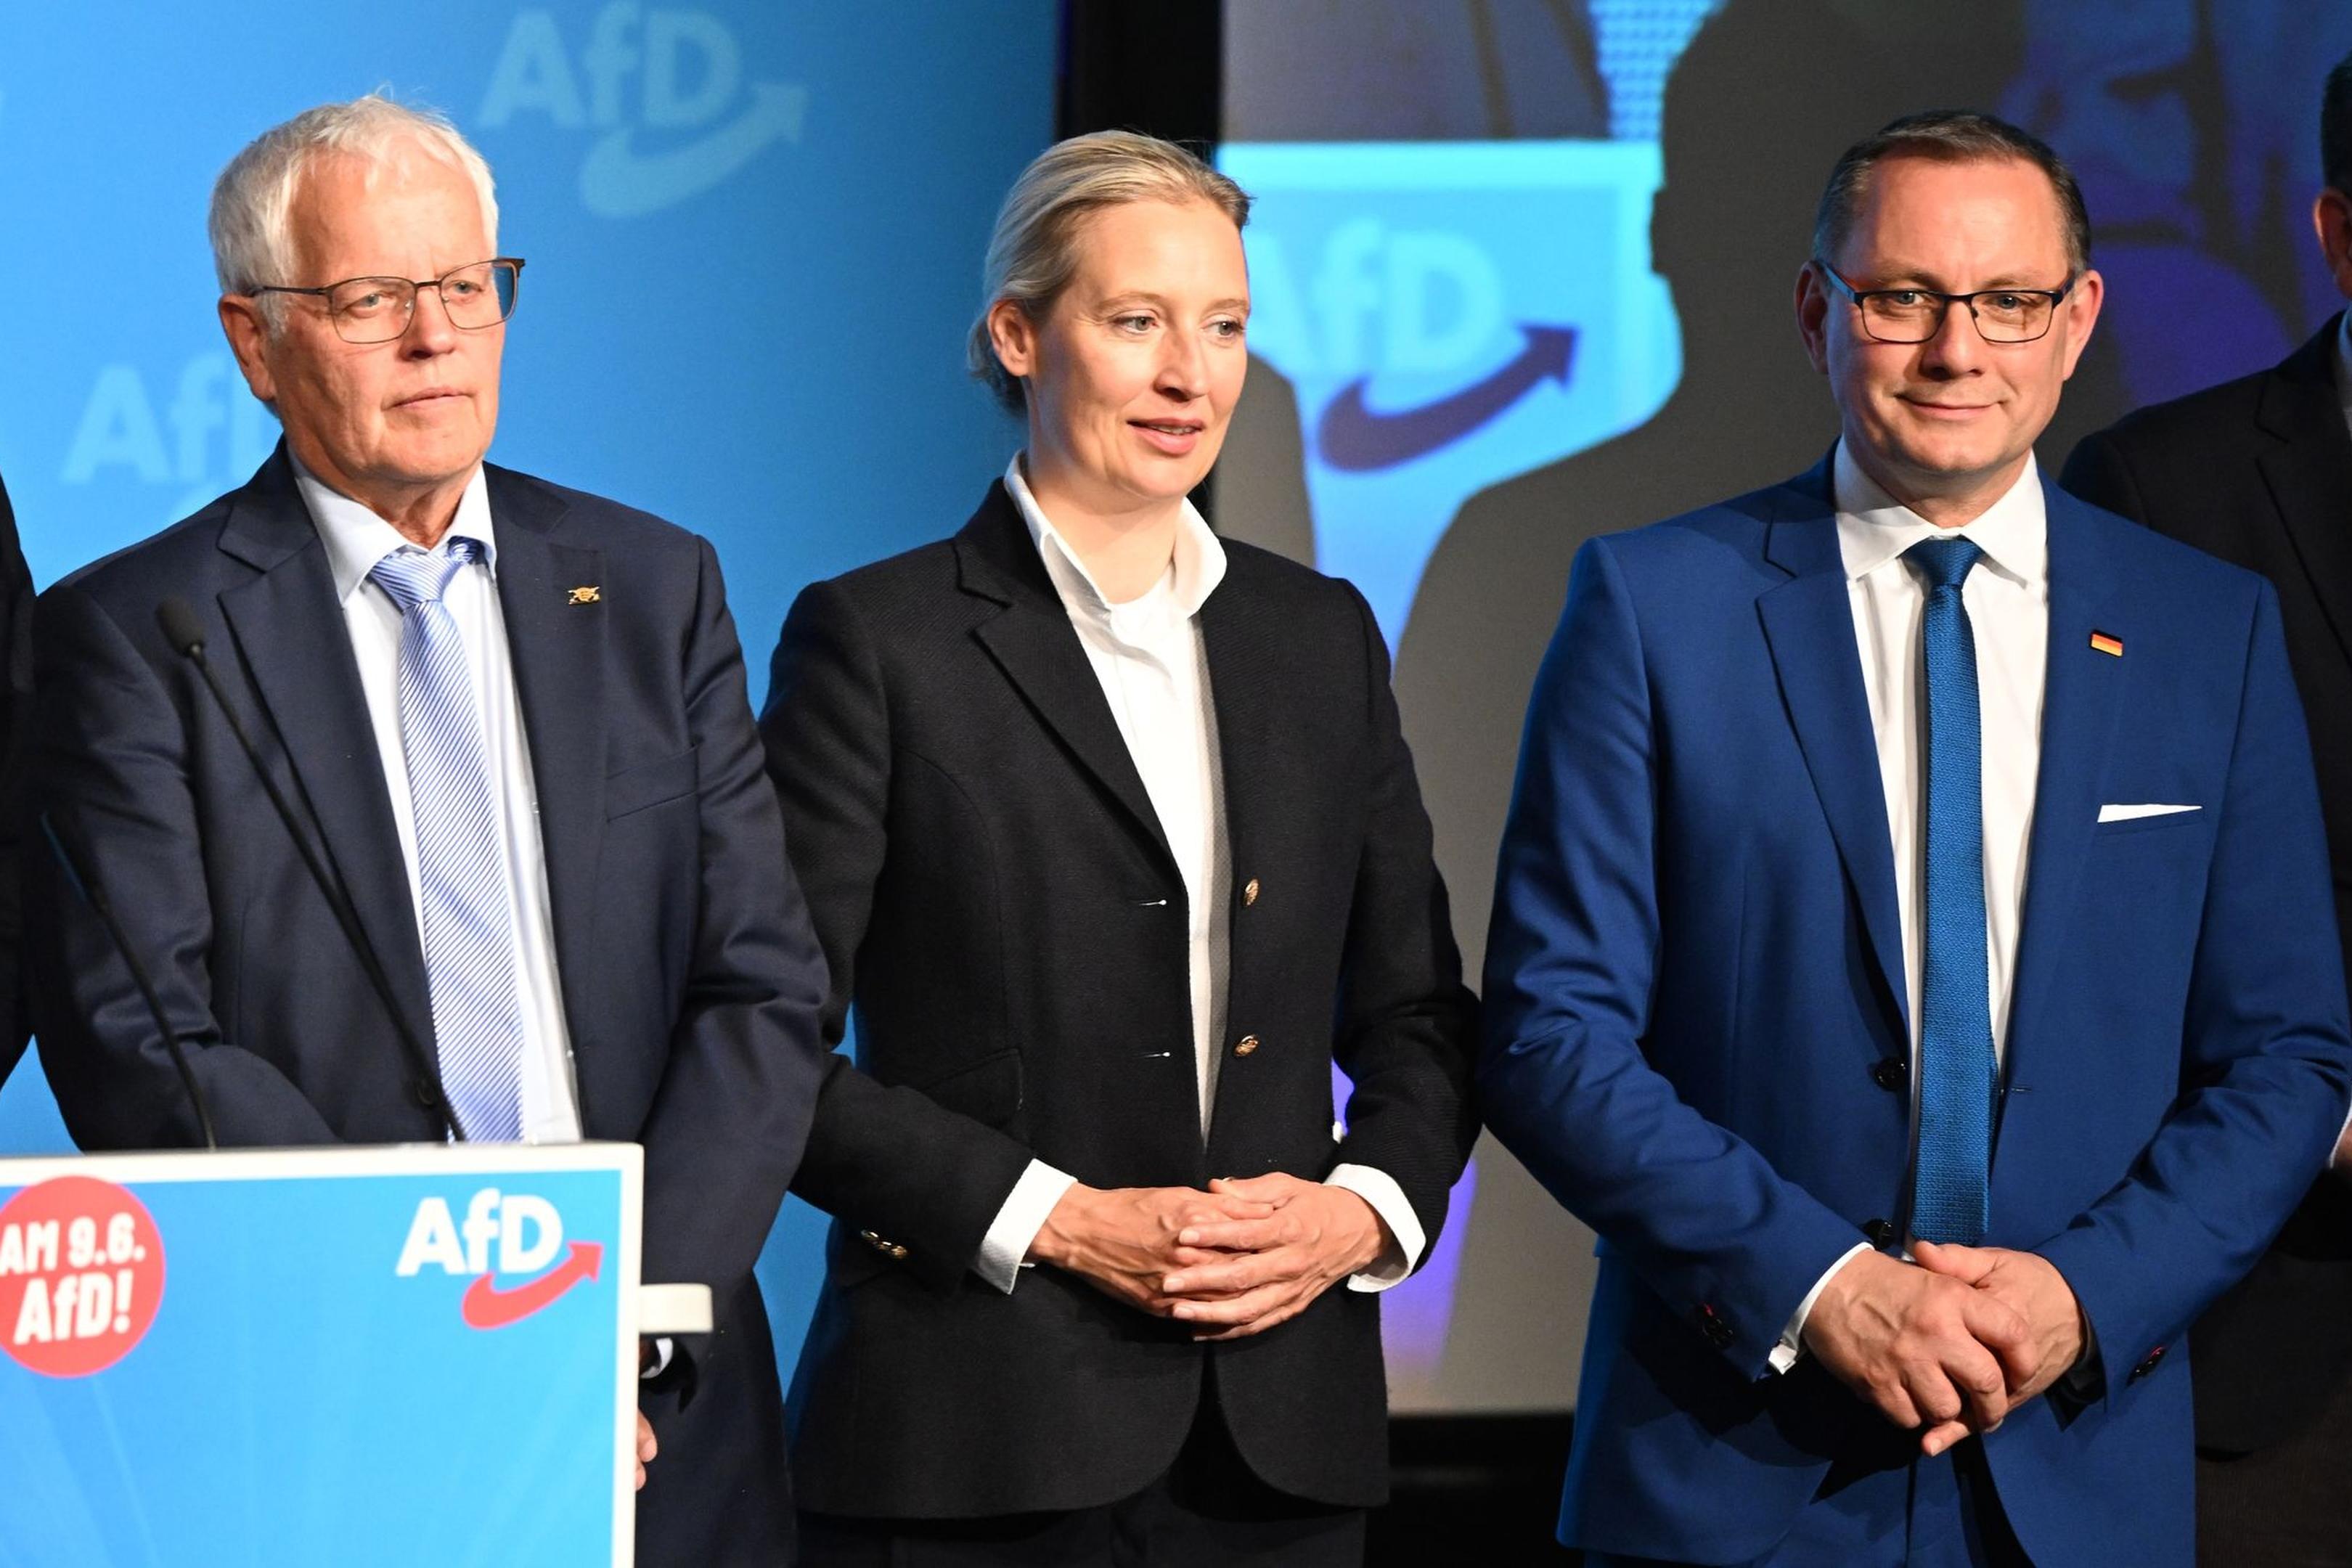 Die AfD-Parteispitze bestehend aus Alice Weidel und Tino Chrupalla beim Wahlkampfauftakt zur Eurowahl zusammen mit dem AfD-Landesvorsitzenden Emil Sänze (l) in Donaueschingen. Der eigentliche Spitzenkandidat der Partei war nicht anwesend.